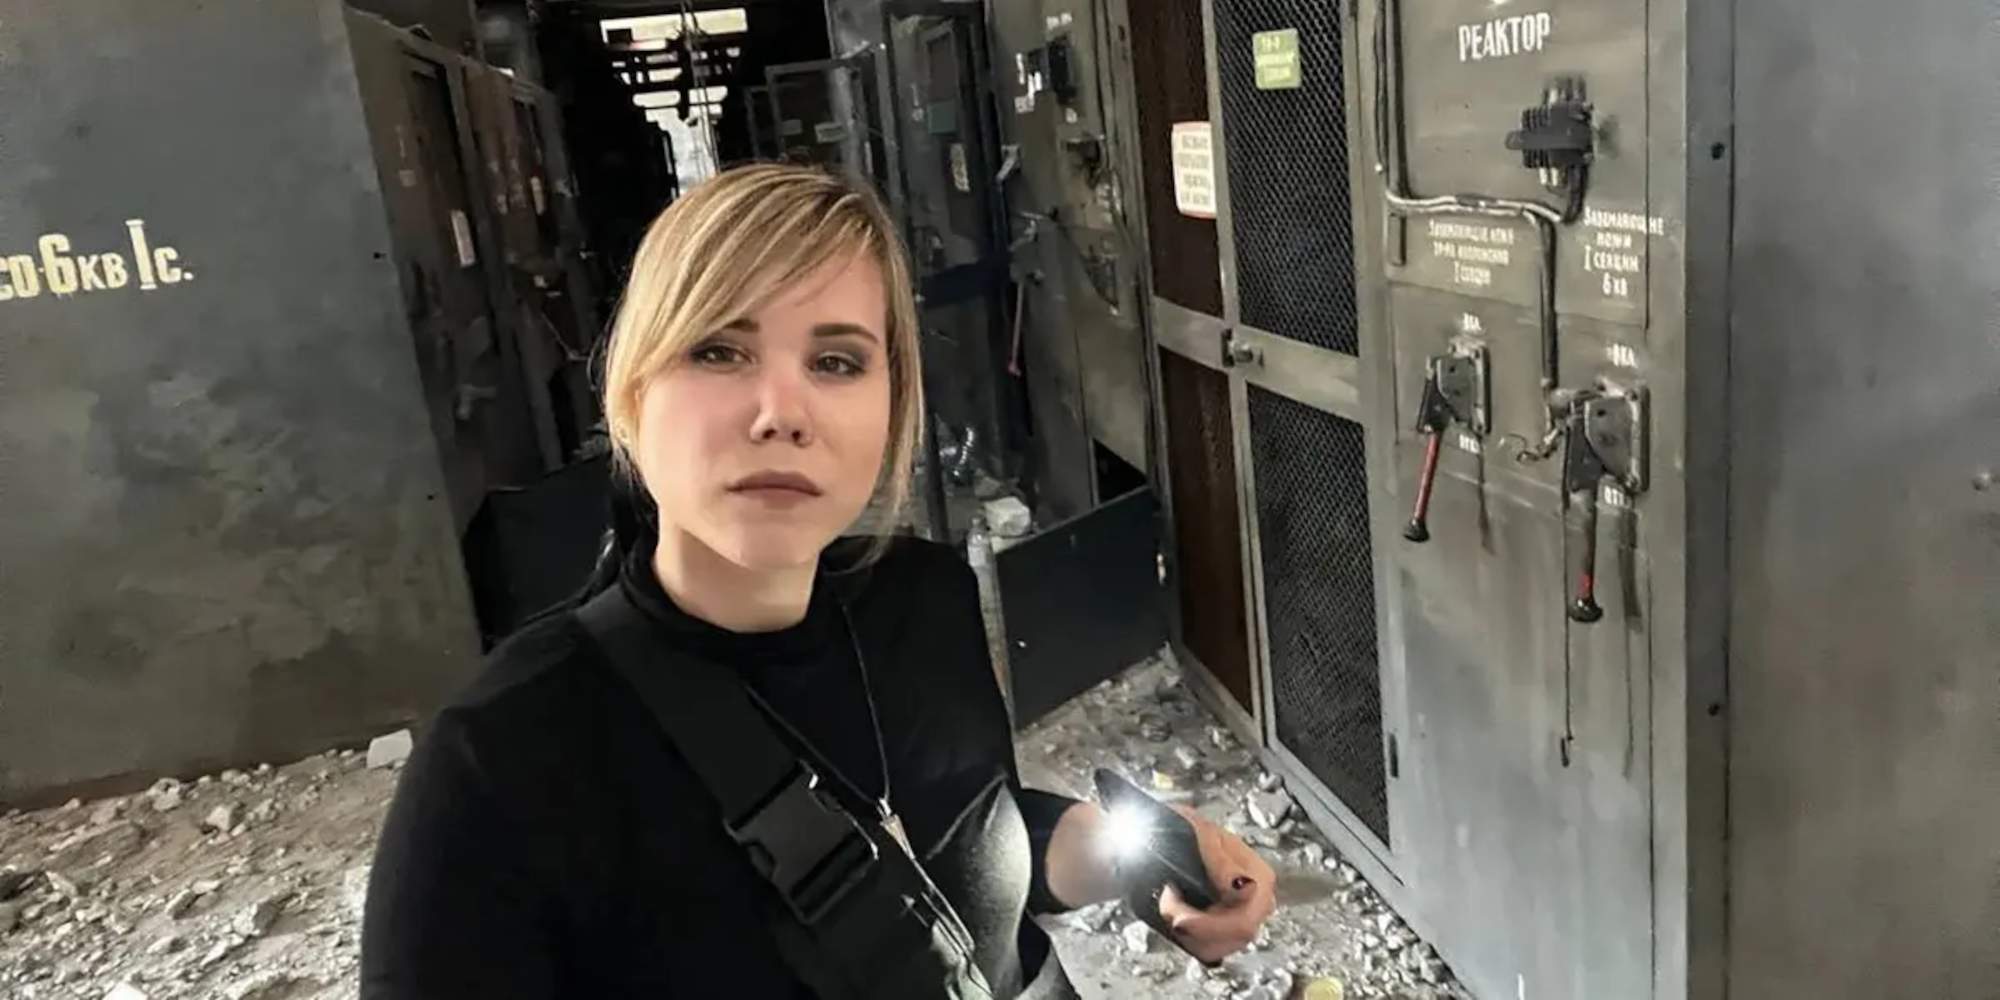 Η Ντάρια Ντουγκίνα, η οποία δολοφονήθηκε στη Μόσχα, σύμφωνα με το FSB, από Ουκρανή πράκτορα